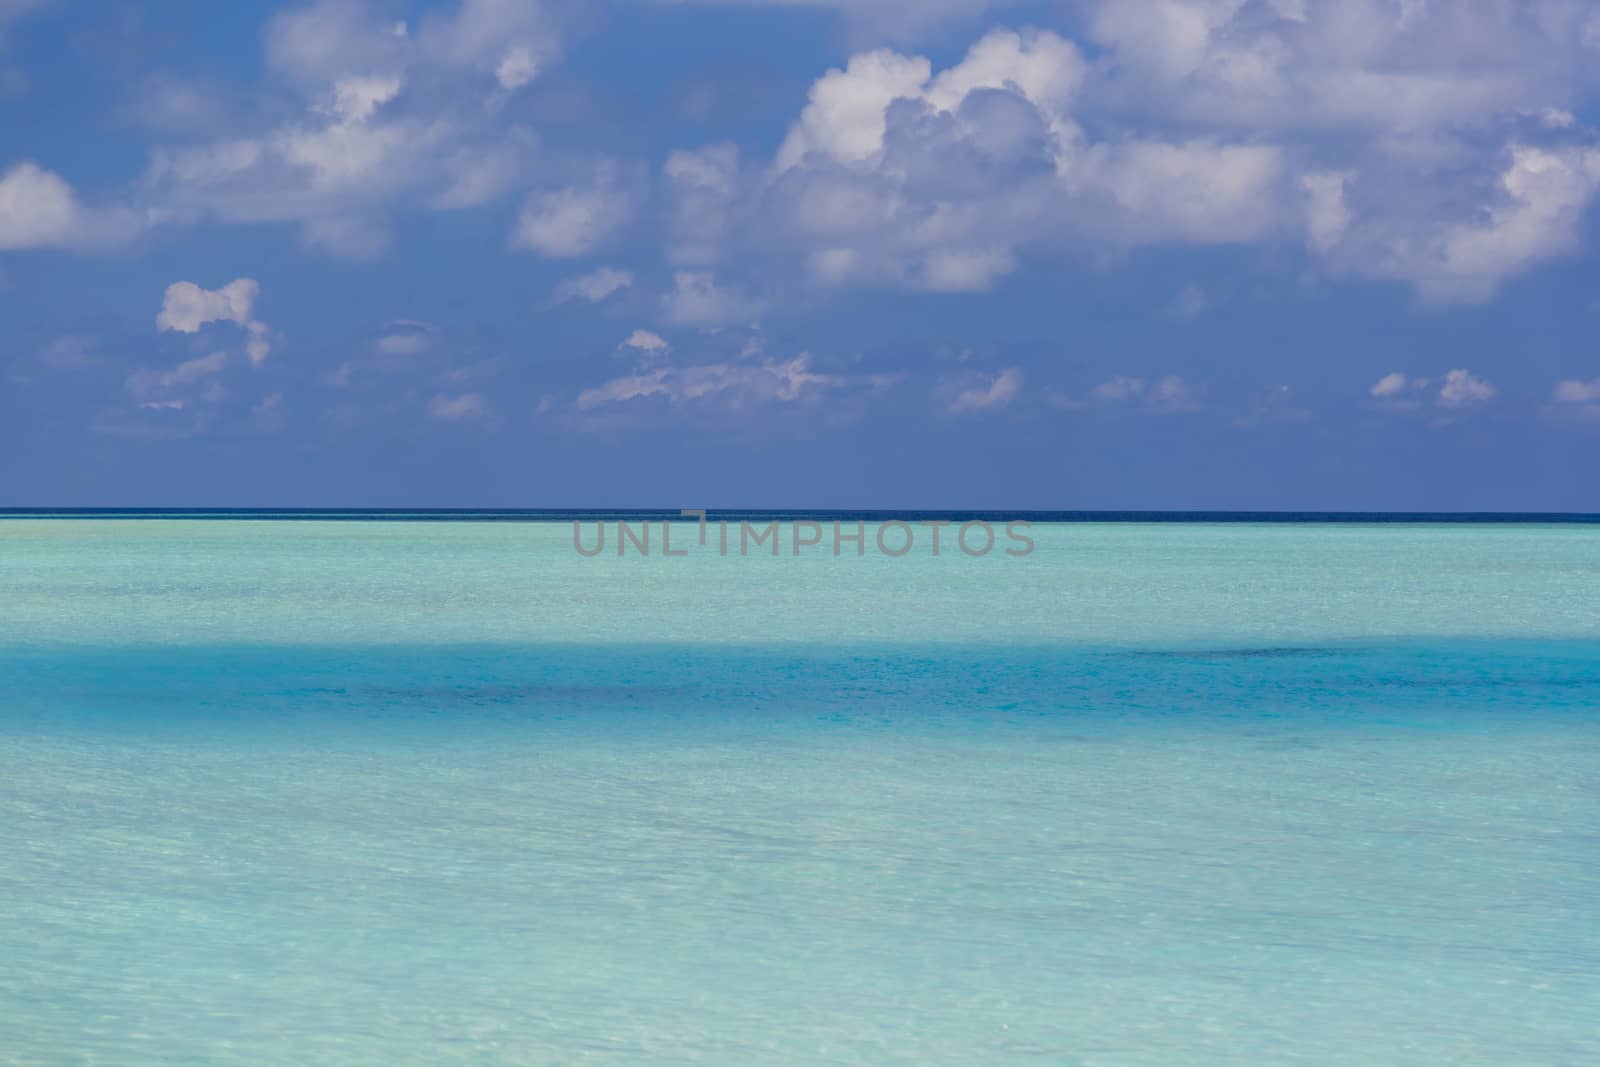 Beautiful Image of the Paradise, The Maldives. by Nemida